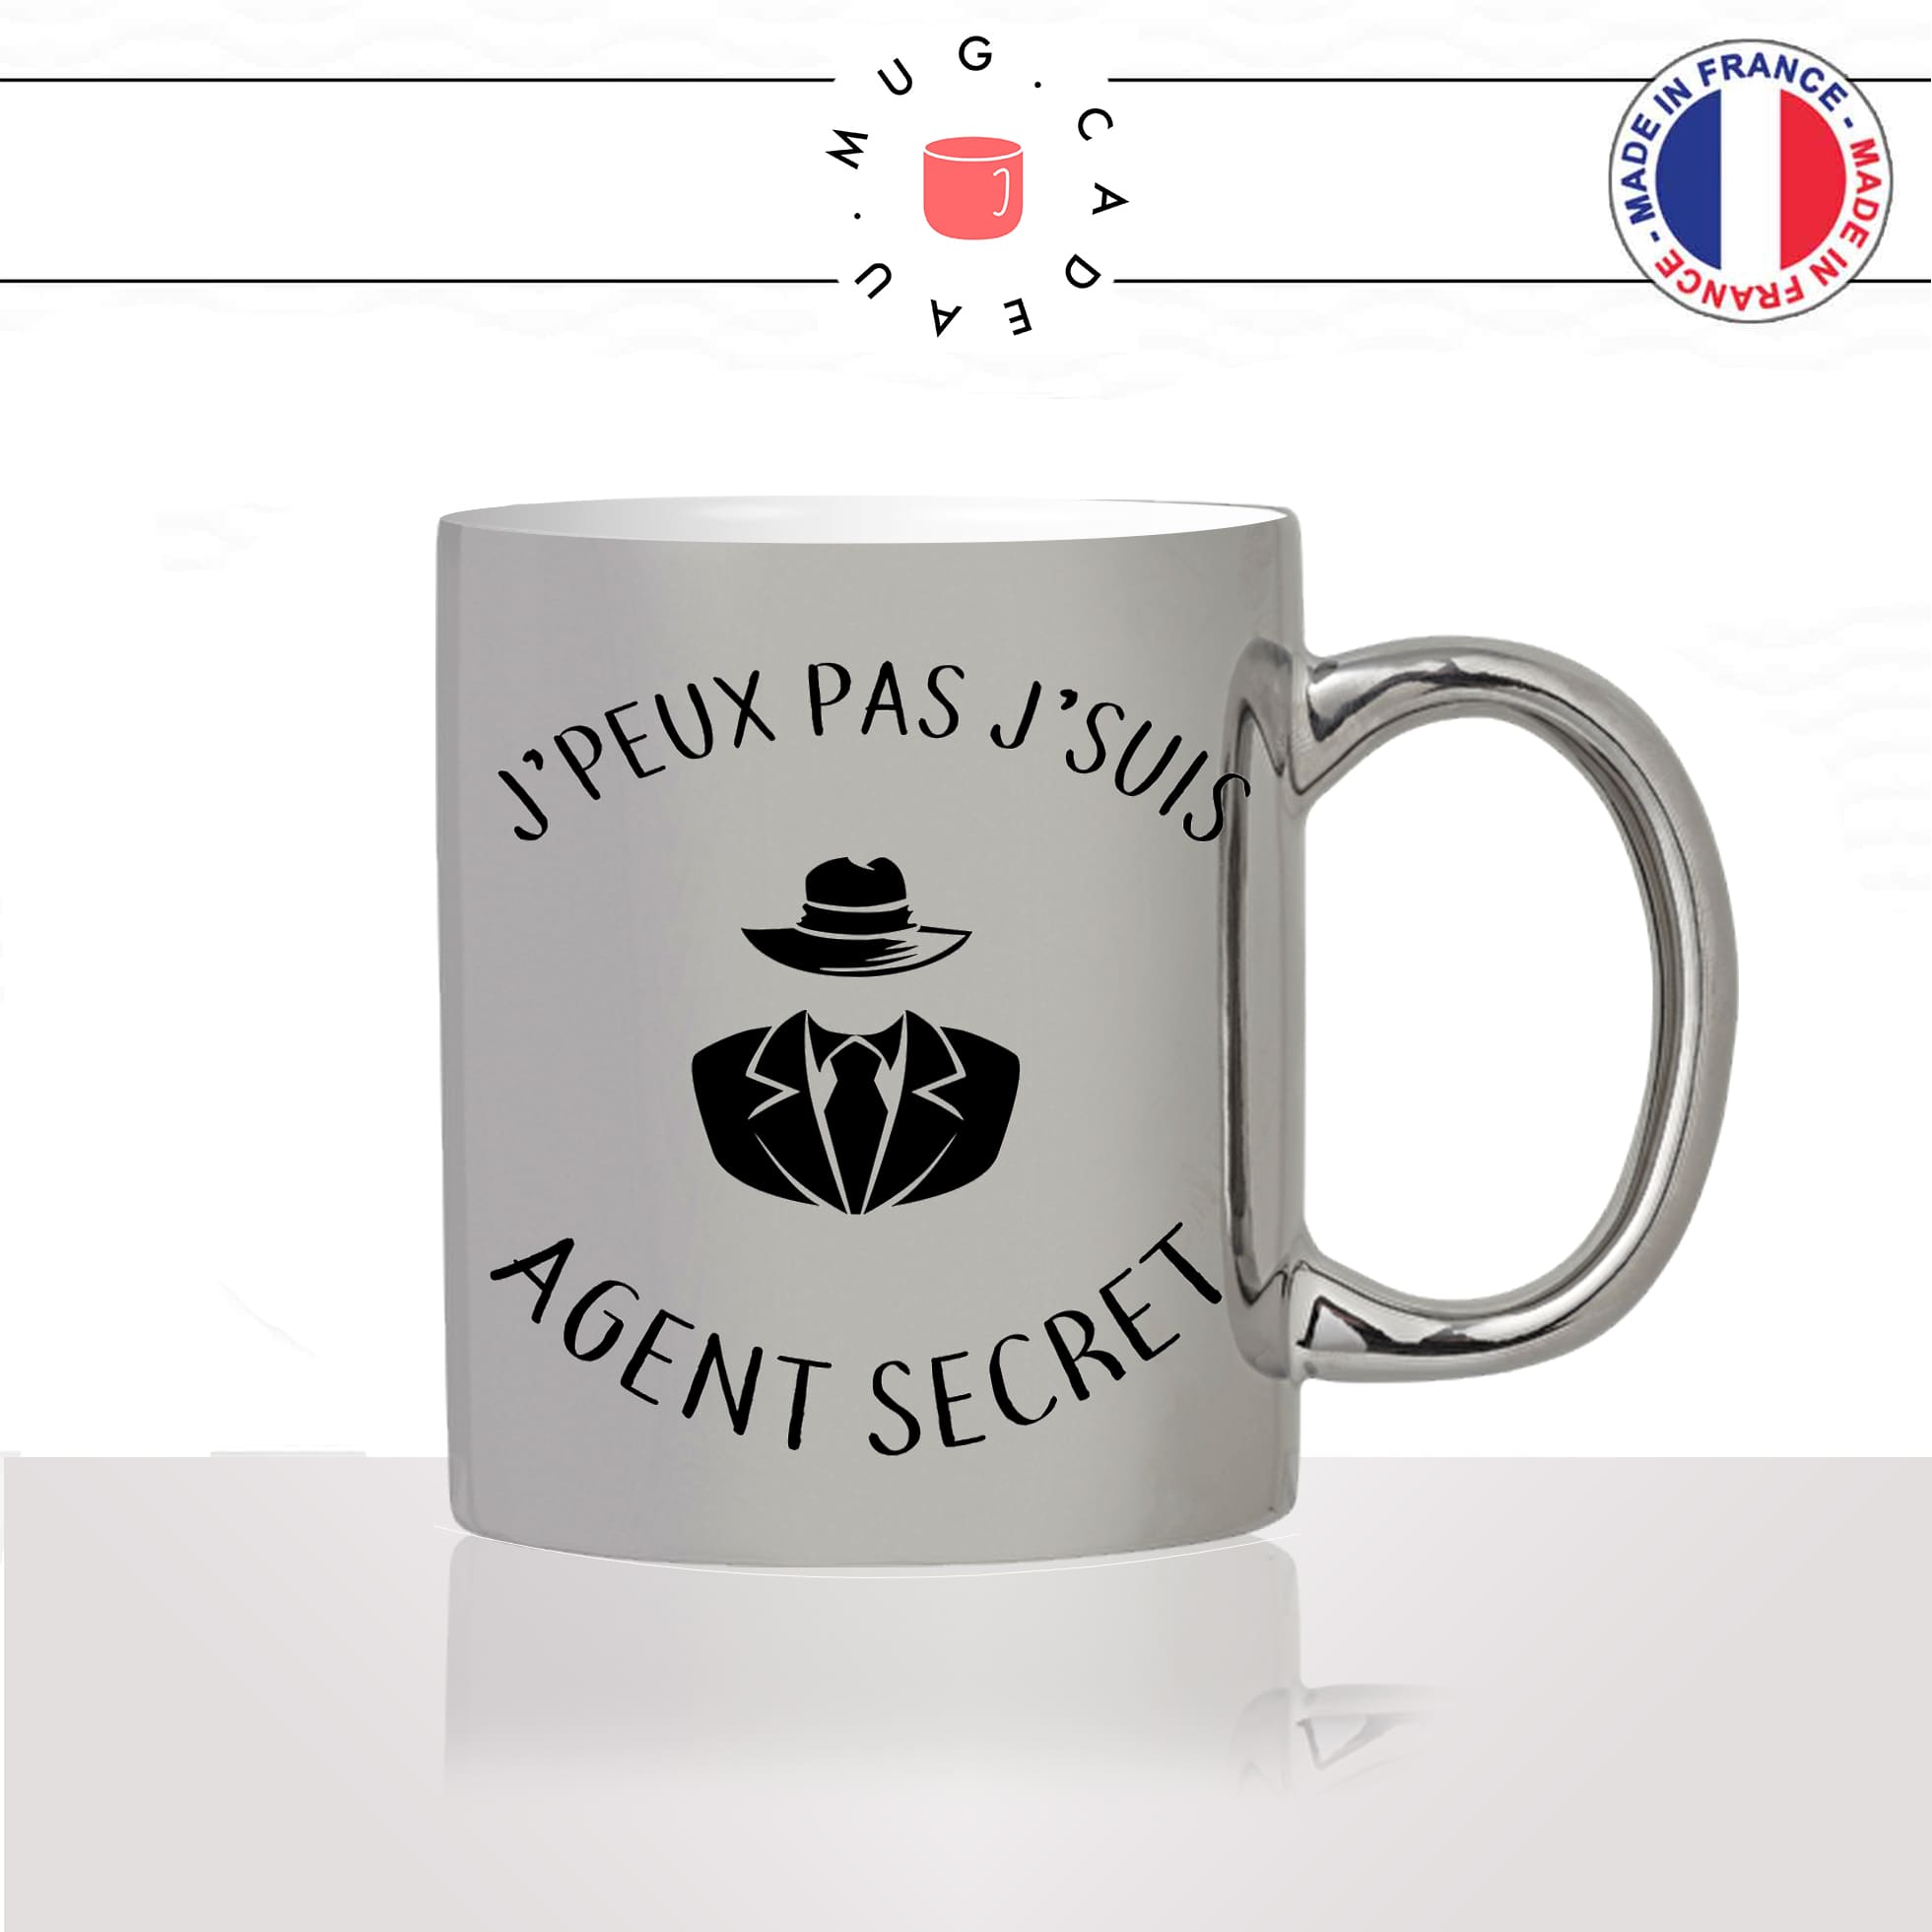 mug-tasse-argent-argenté-silver-jpeux-pas-jsuis-agent-secret-metier-oss117-james-bond-humour-stylé-idée-cadeau-fun-cool-café-thé2